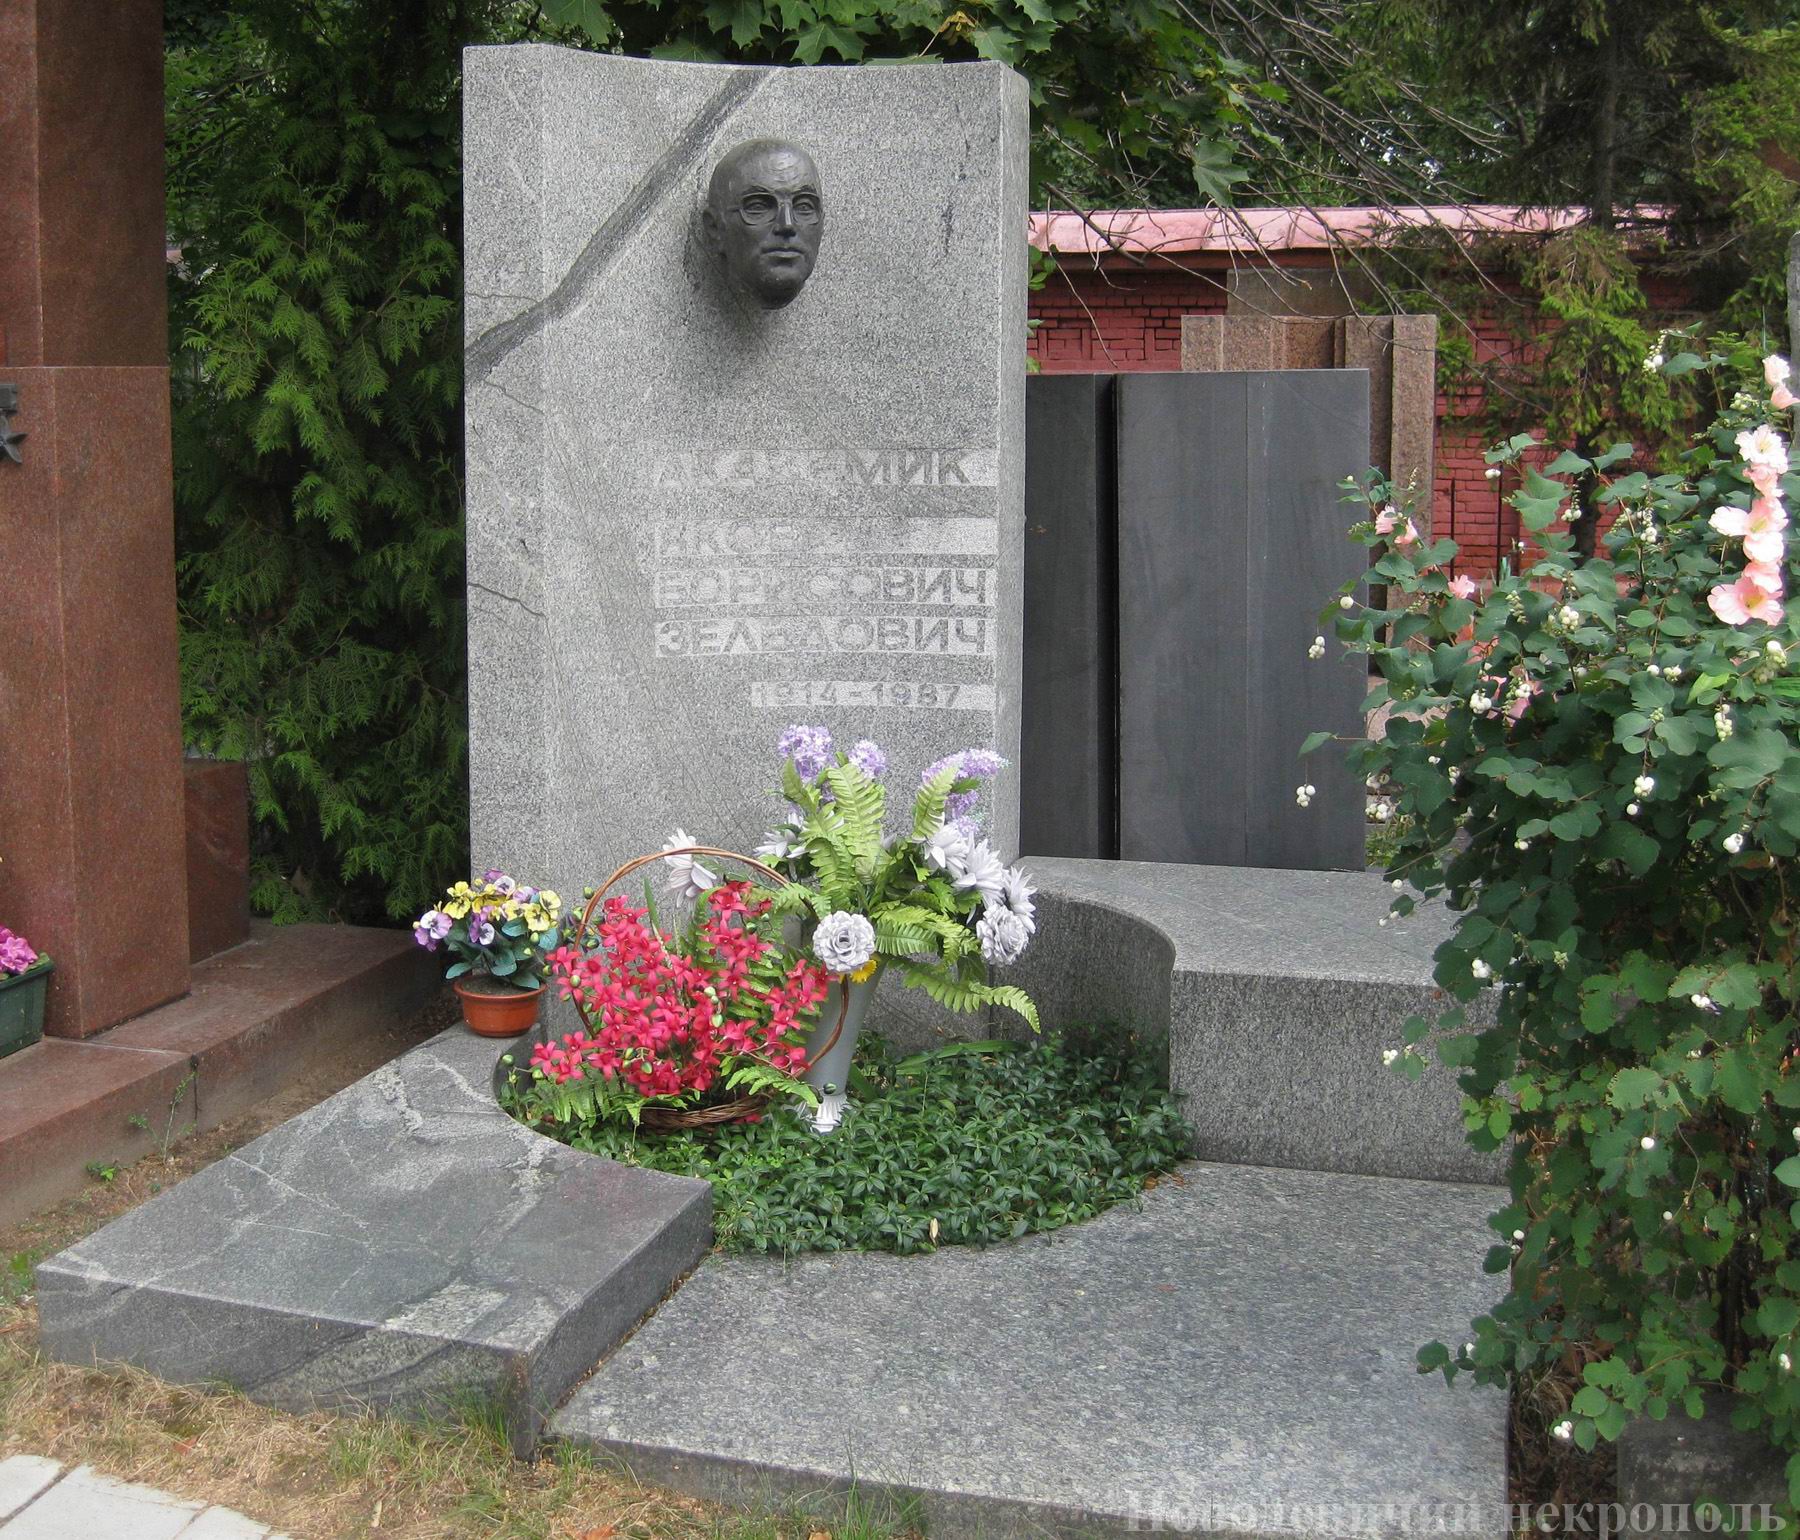 Памятник на могиле Зельдовича Я.Б. (1914-1987), ск. Е.Преображенская, арх. А.Великанов, на Новодевичьем кладбище (10-4-17).